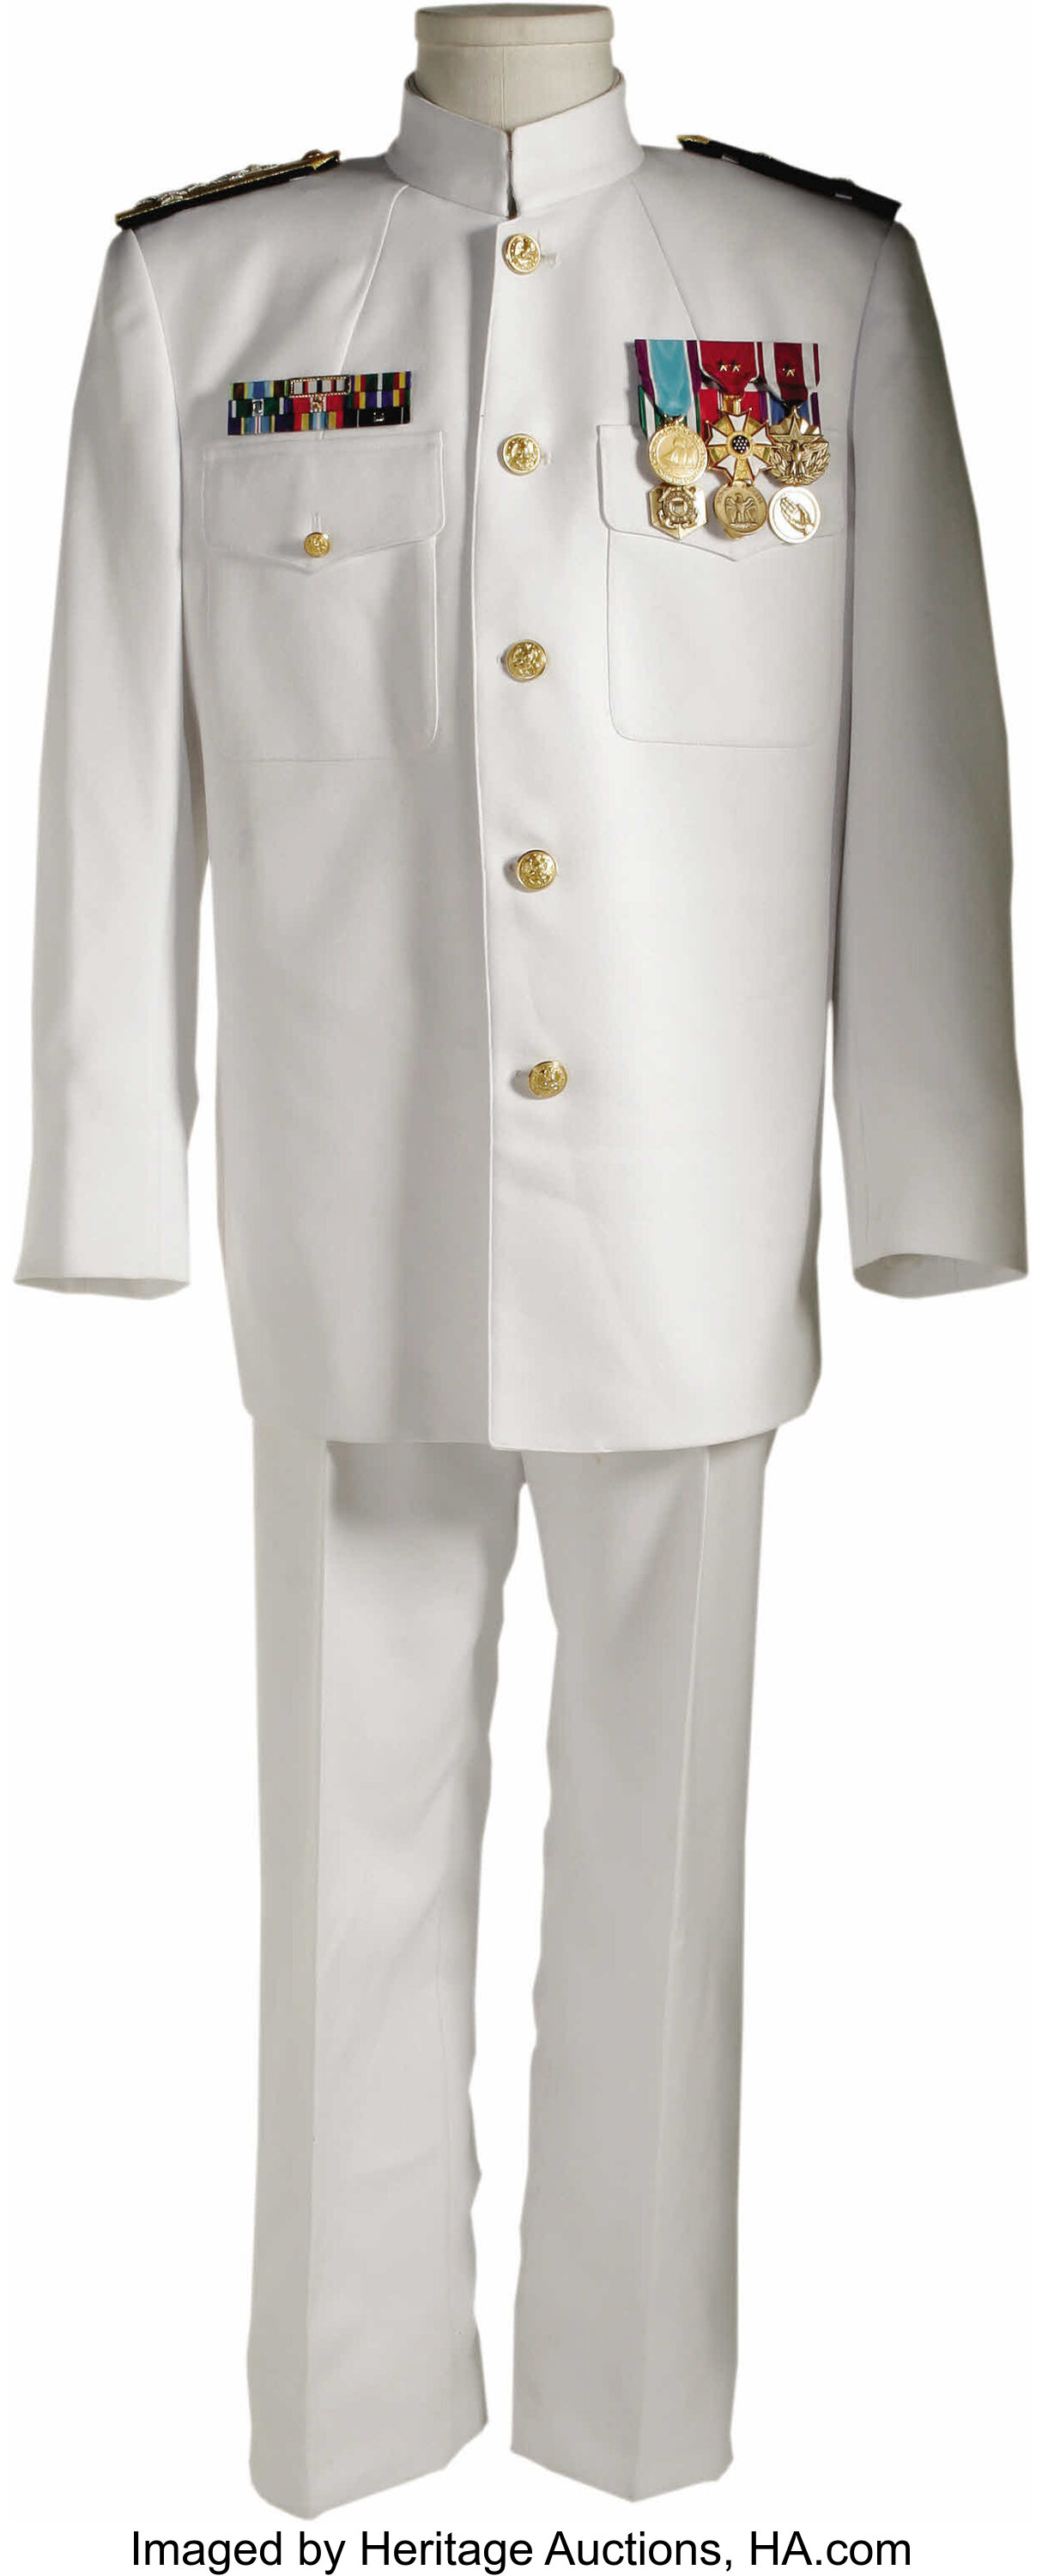 Rip Torn U.S. Coast Guard Uniform Costume from 